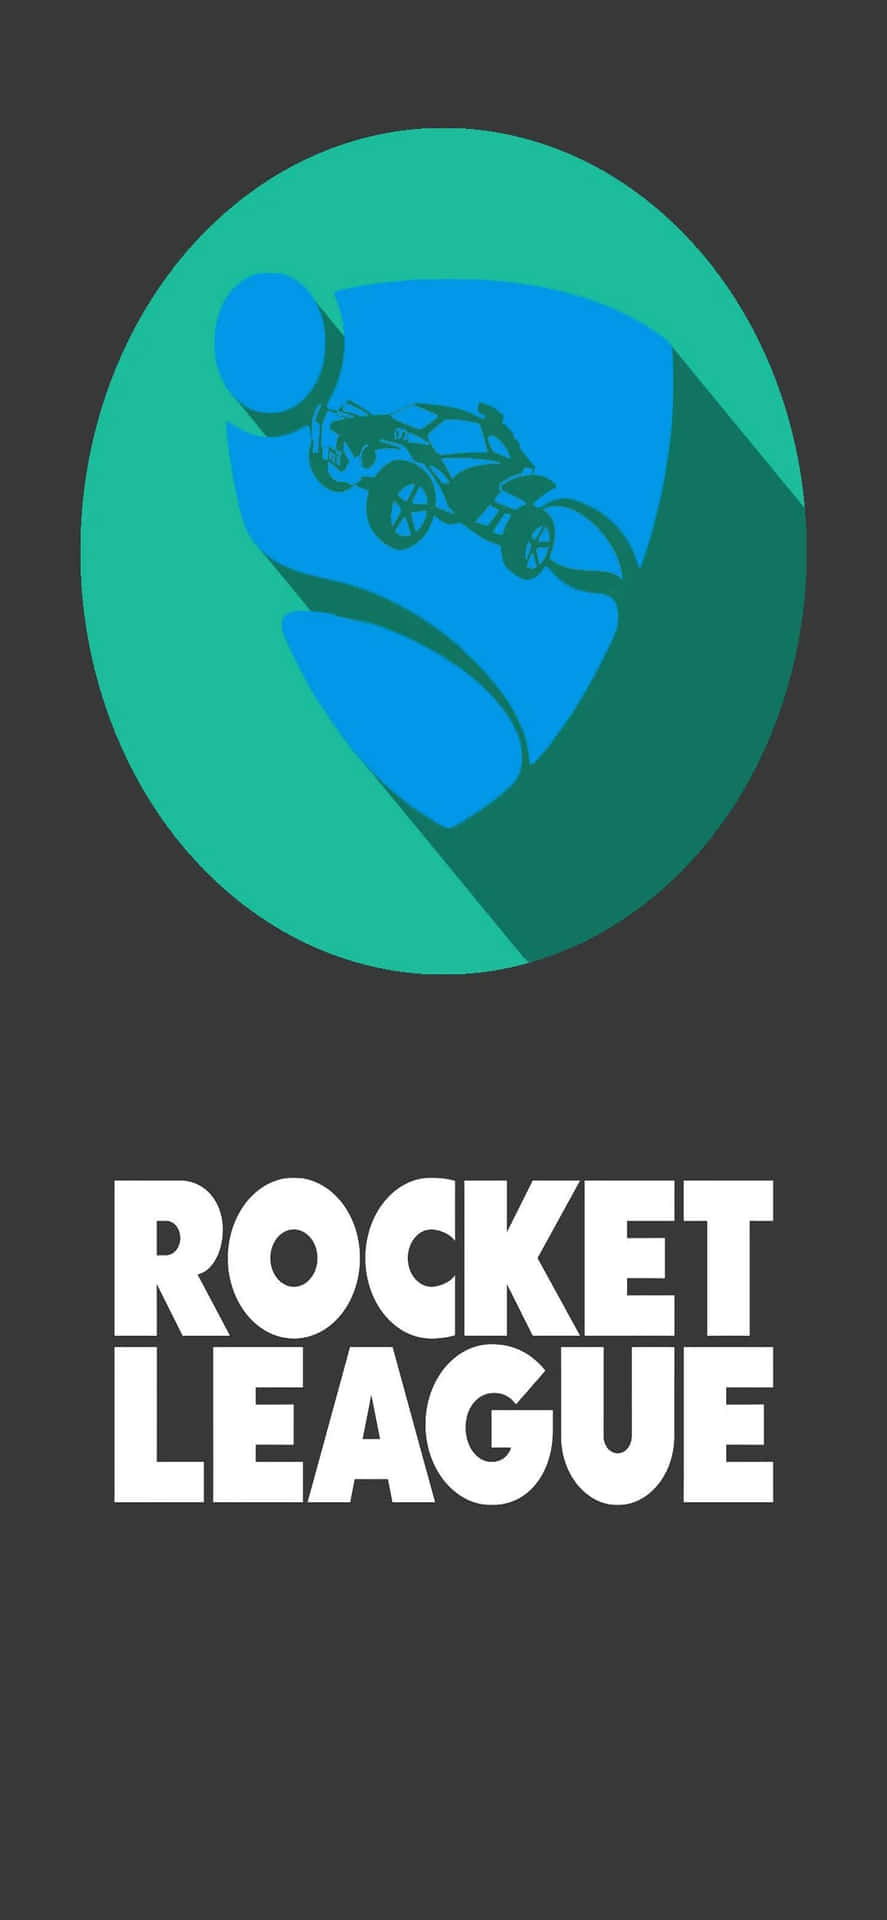 Tauchensie Ein In Die Wettbewerbsorientierte Rocket League-szene Mit Dem Iphone Xs Max.